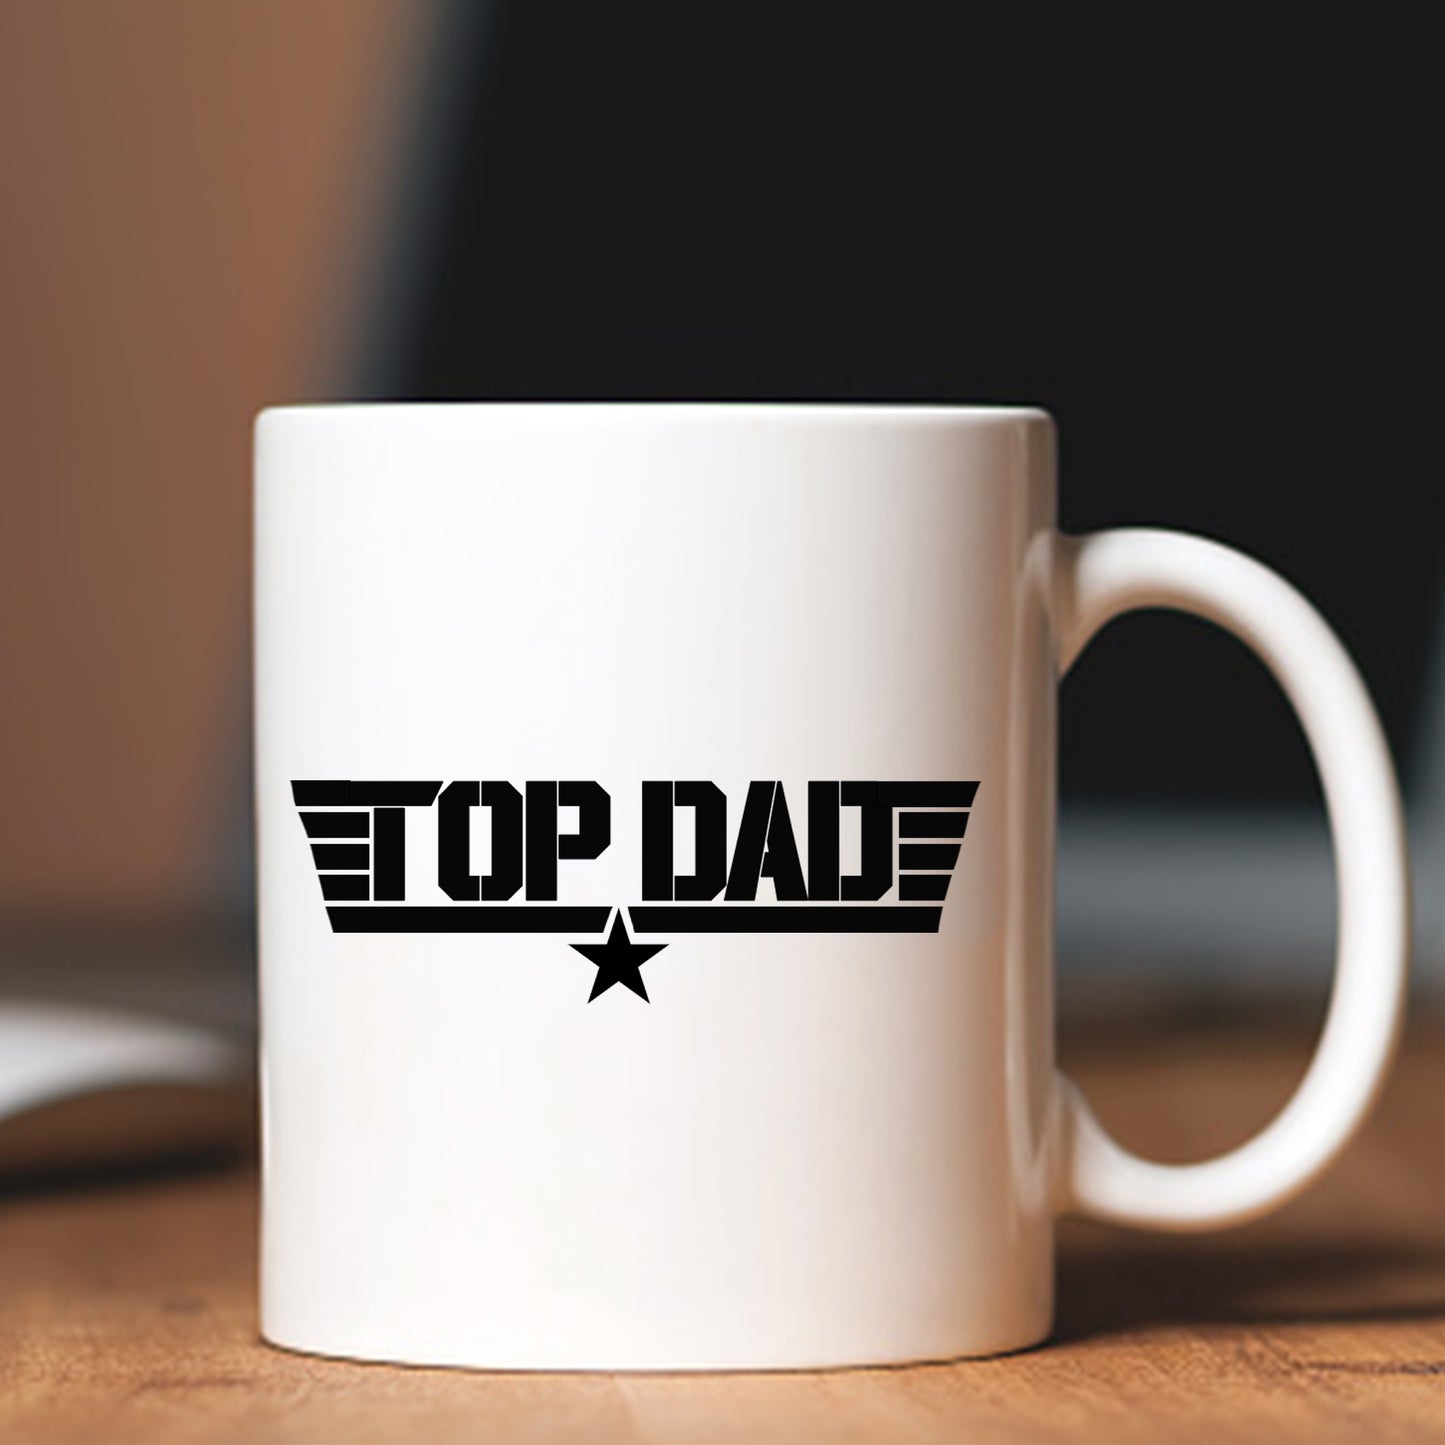 'Top Dad' Mug ✈️